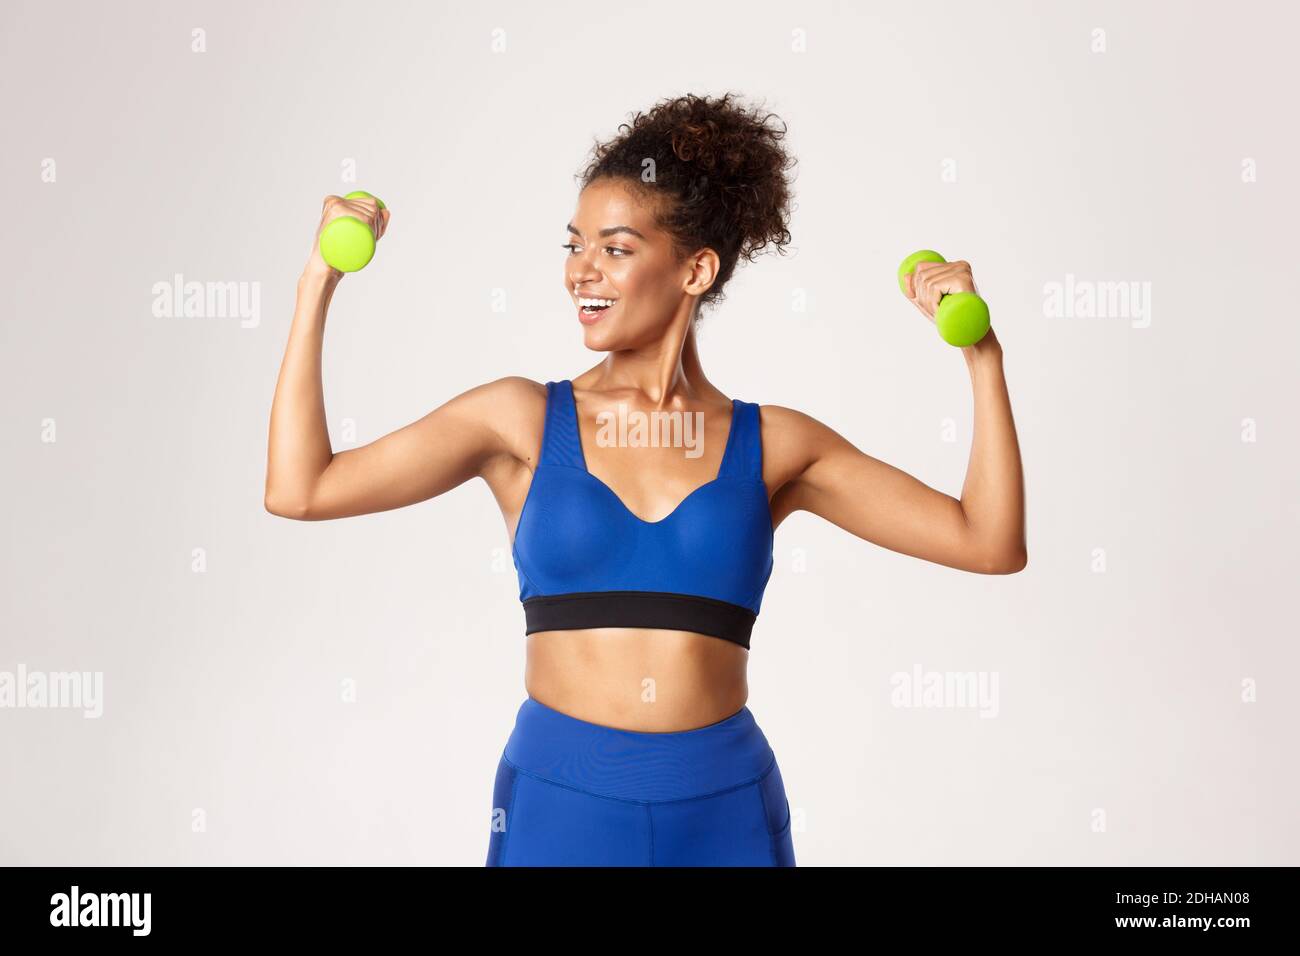 https://c8.alamy.com/compes/2dhan08/concepto-de-deporte-y-entrenamiento-mujer-de-fitness-afro-americana-fuerte-y-en-forma-con-ropa-de-gimnasio-azul-haciendo-ejercicio-con-pesas-le-2dhan08.jpg